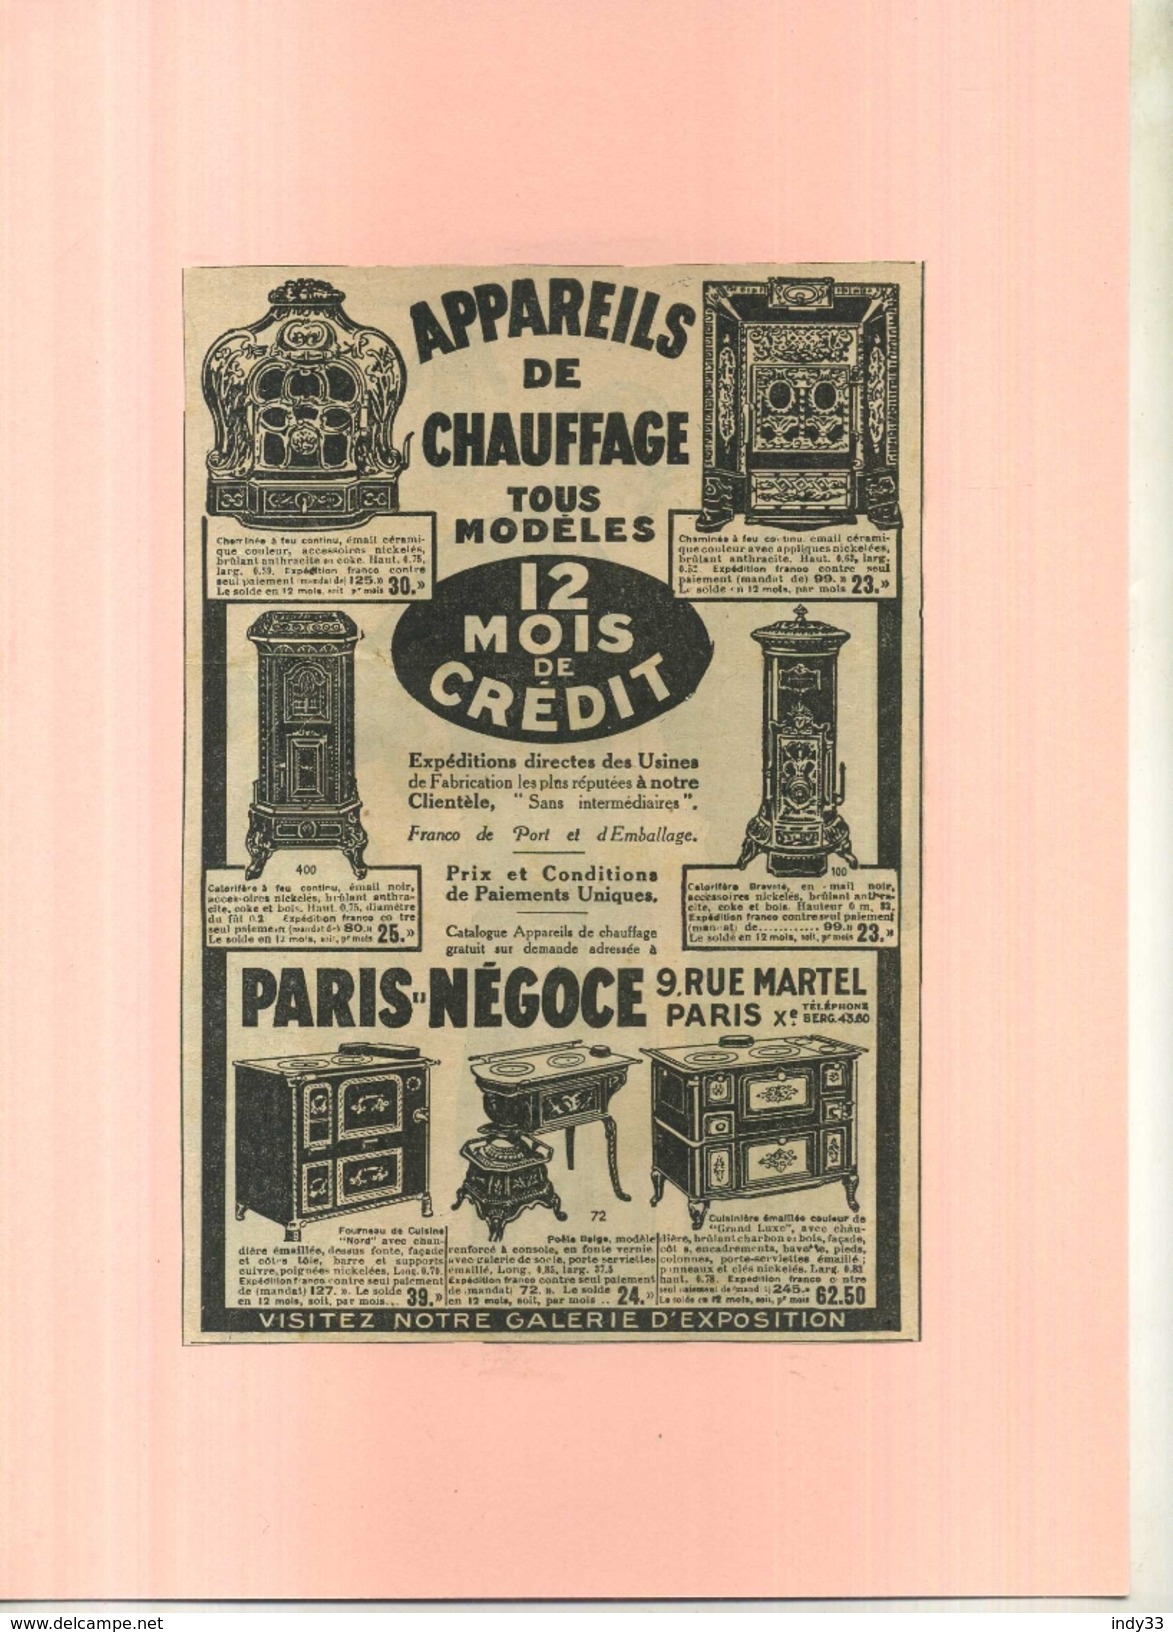 FRANCE 75 . PARIS NEGOCE . APPAREILS DE CHAUFFAGE   . PUB  DES ANNEES 1920 DECOUPEE ET COLLEE SUR PAPIER . - Other Apparatus